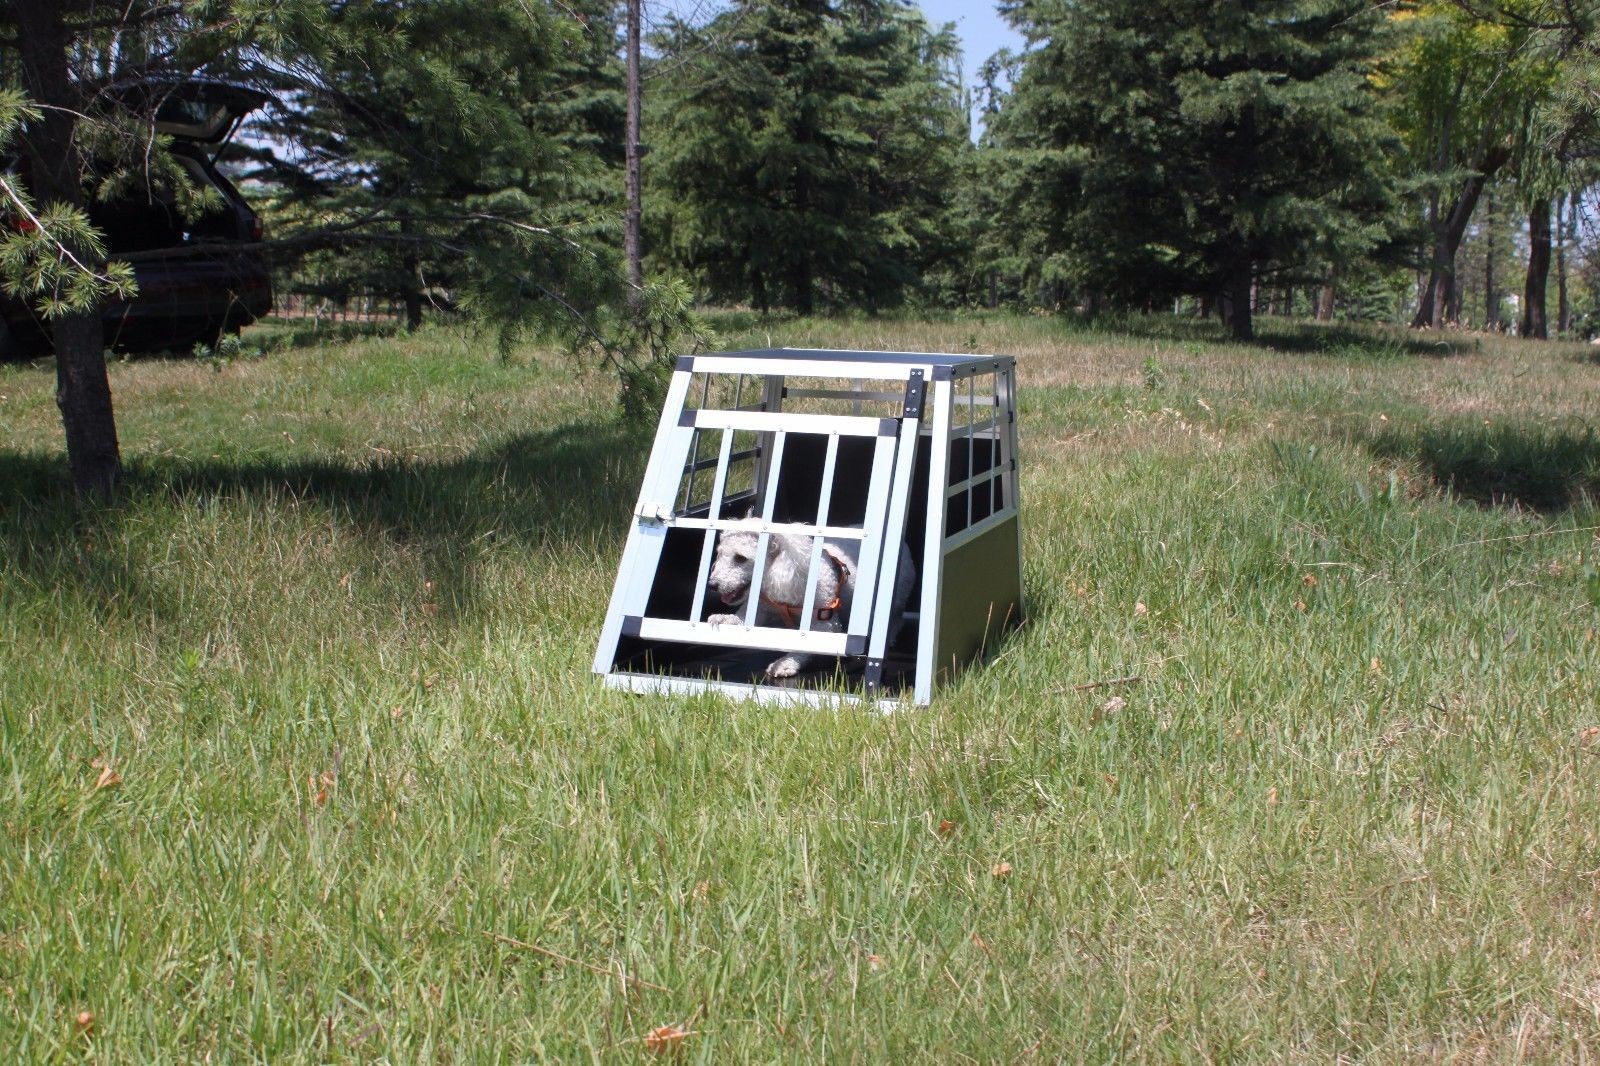 Aluminium Transport Dog Cage